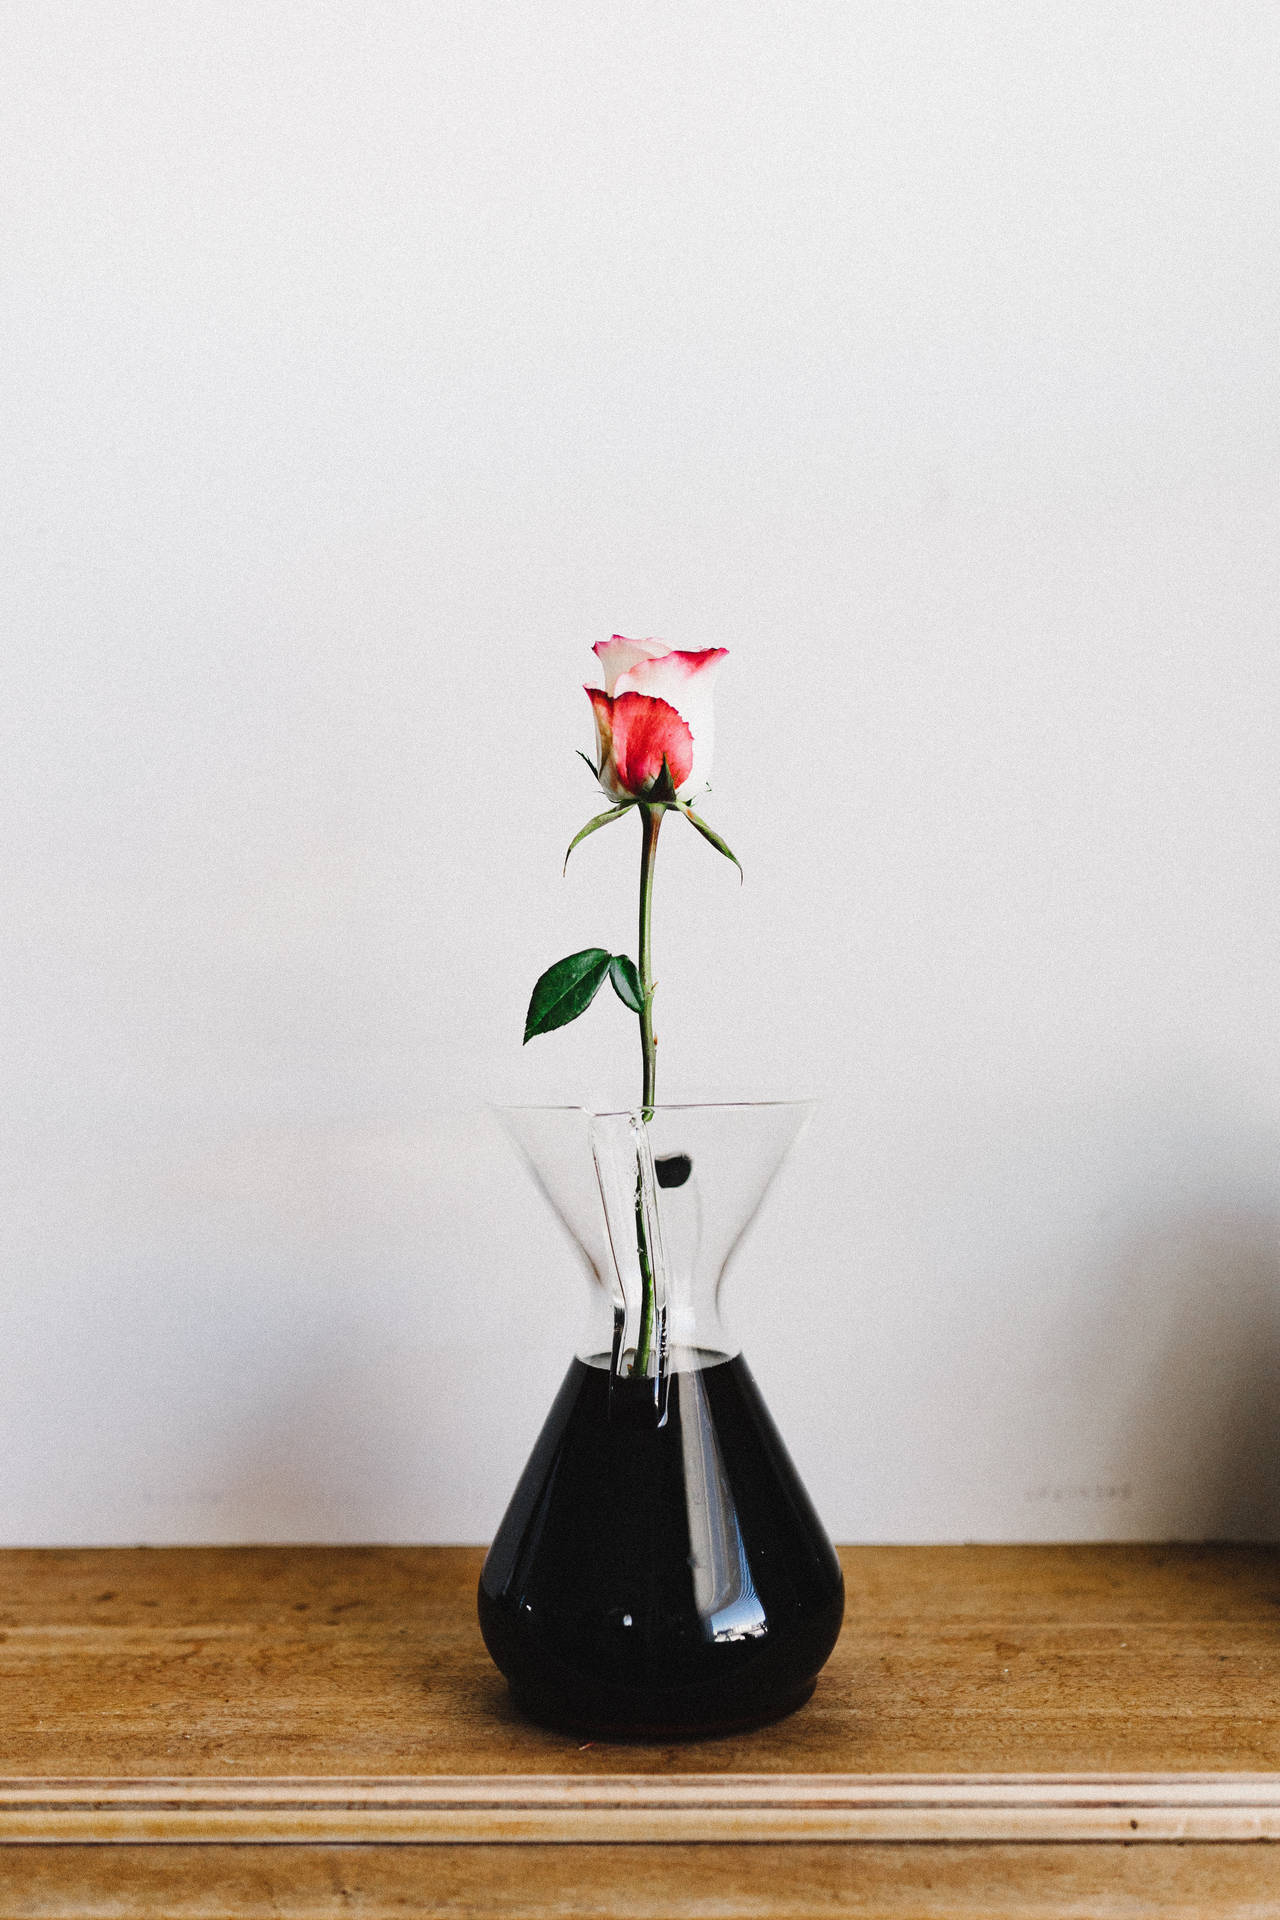 Rose, Flower, Vase